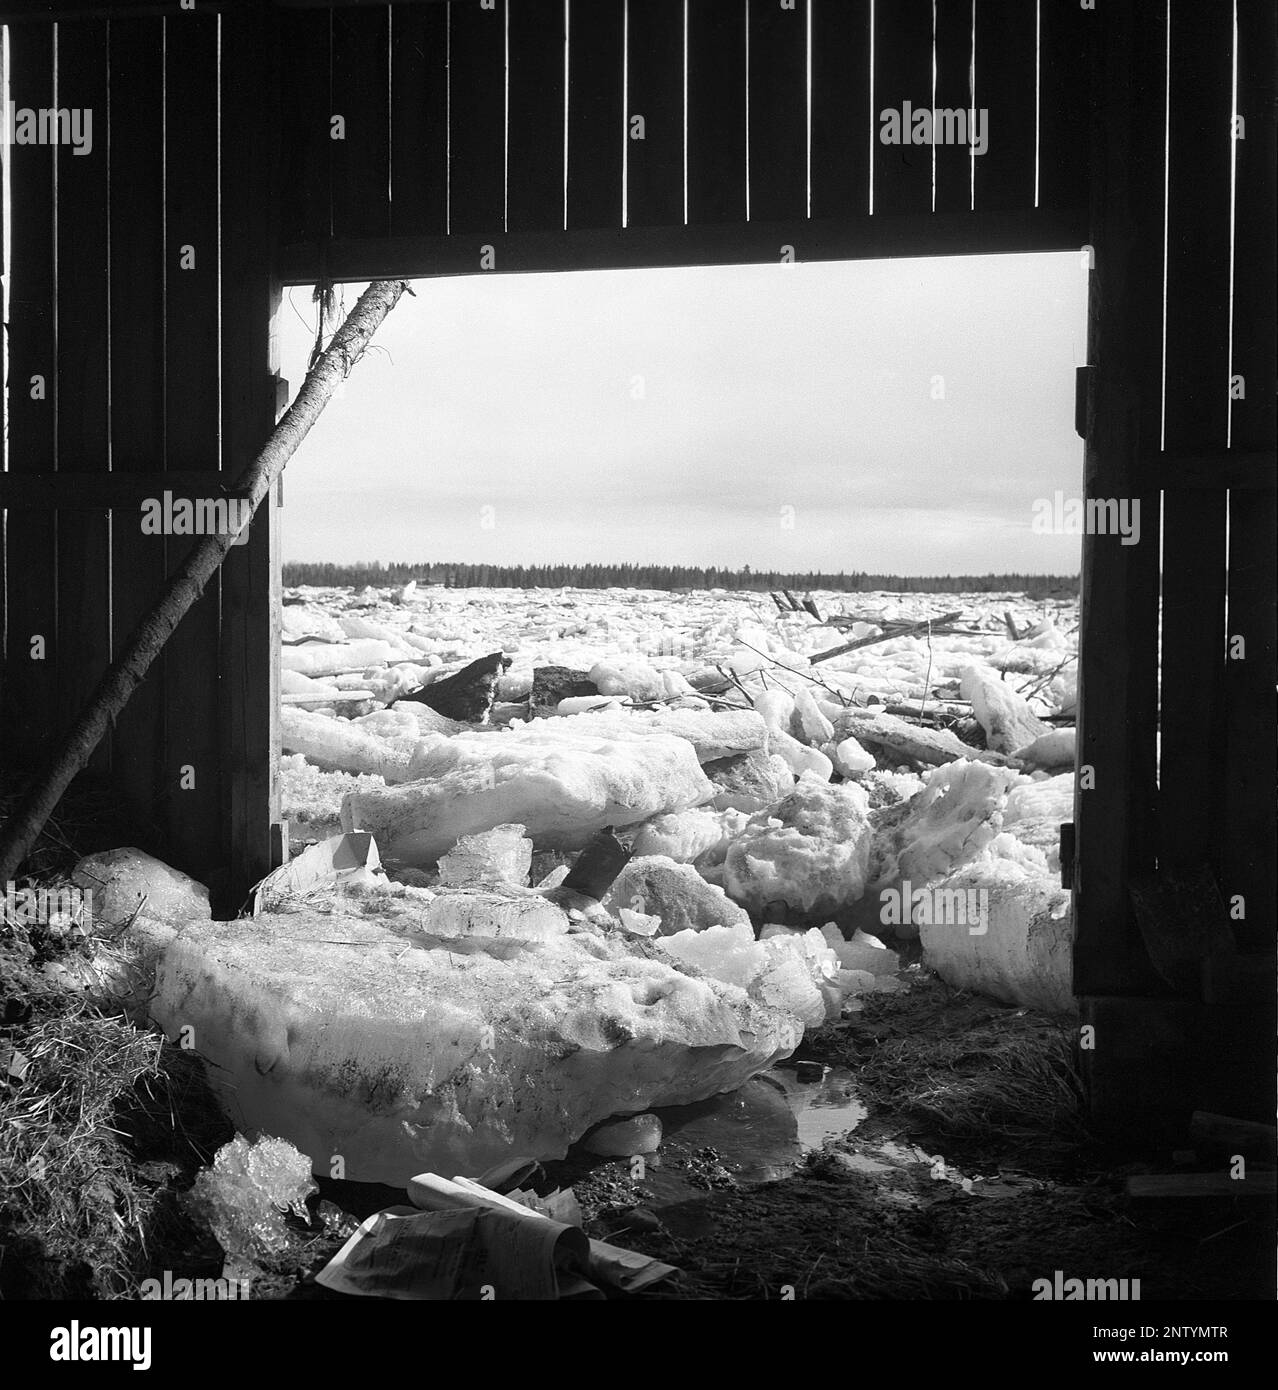 Naturkatastrophe in den 1940er Jahren. Im Frühsommer, den 20-23. Mai 1944, überflutete das Wasser im Fluss Torne älv aufgrund einer Eismasse, die das Wasser 3,5 Meter höher als normal dämpfte. Die Konsequenzen waren schwerwiegend. Auf dem umliegenden Gelände wurden Meter Eis zurückgelassen, als das Wasser ablief und die Bauernhäuser und die Felder zerstörte. Das Dorf Korpikylä in der Nähe von Skogskärr und ein Blick von einem zerstörten Schuppen auf die Eisschlösser, die die Felder bedecken. Kristoffersson Ref. H117-5 Stockfoto